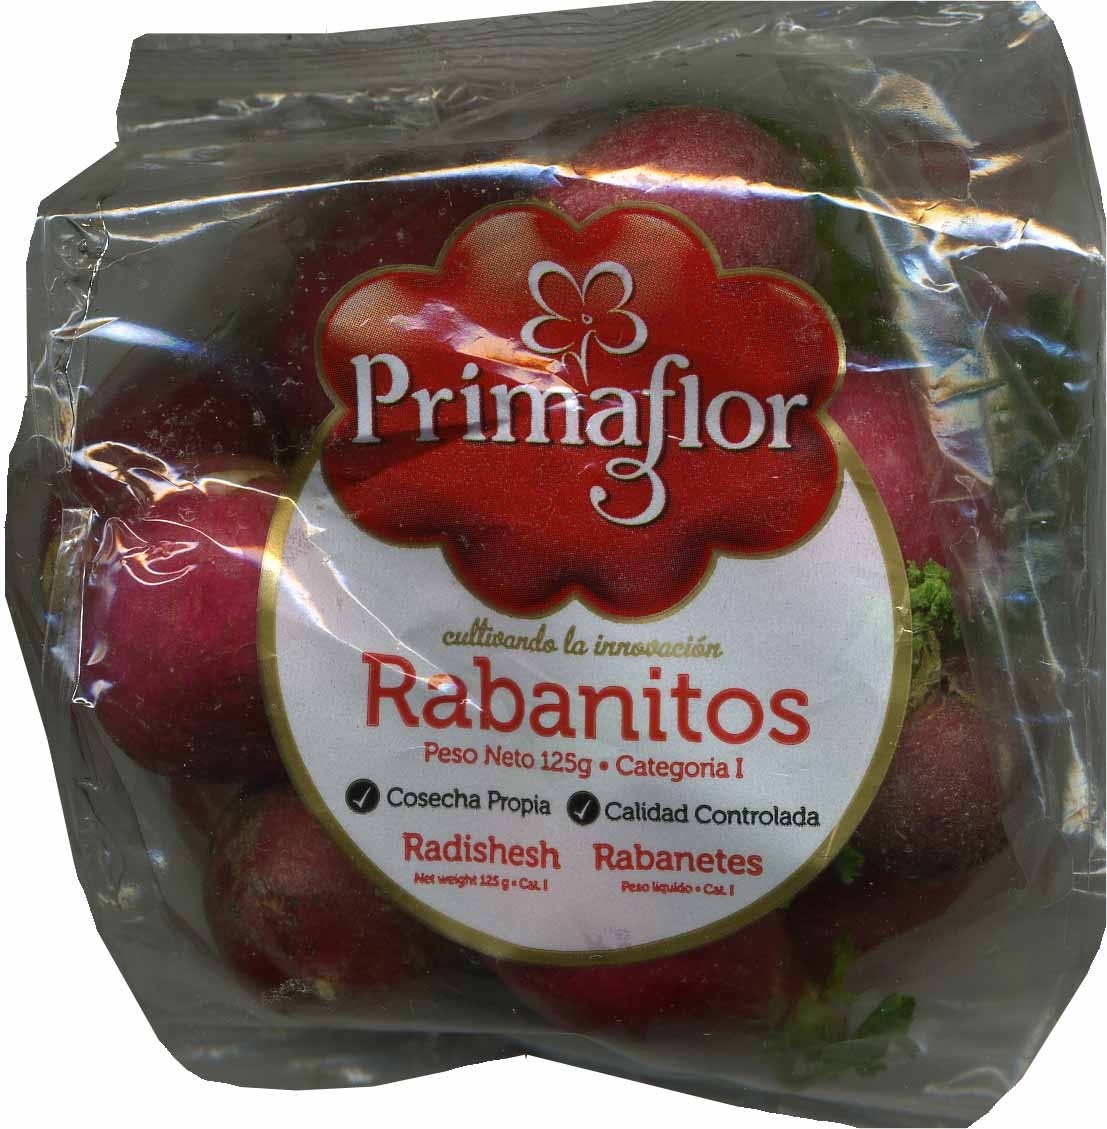 Rabanitos - Product - es